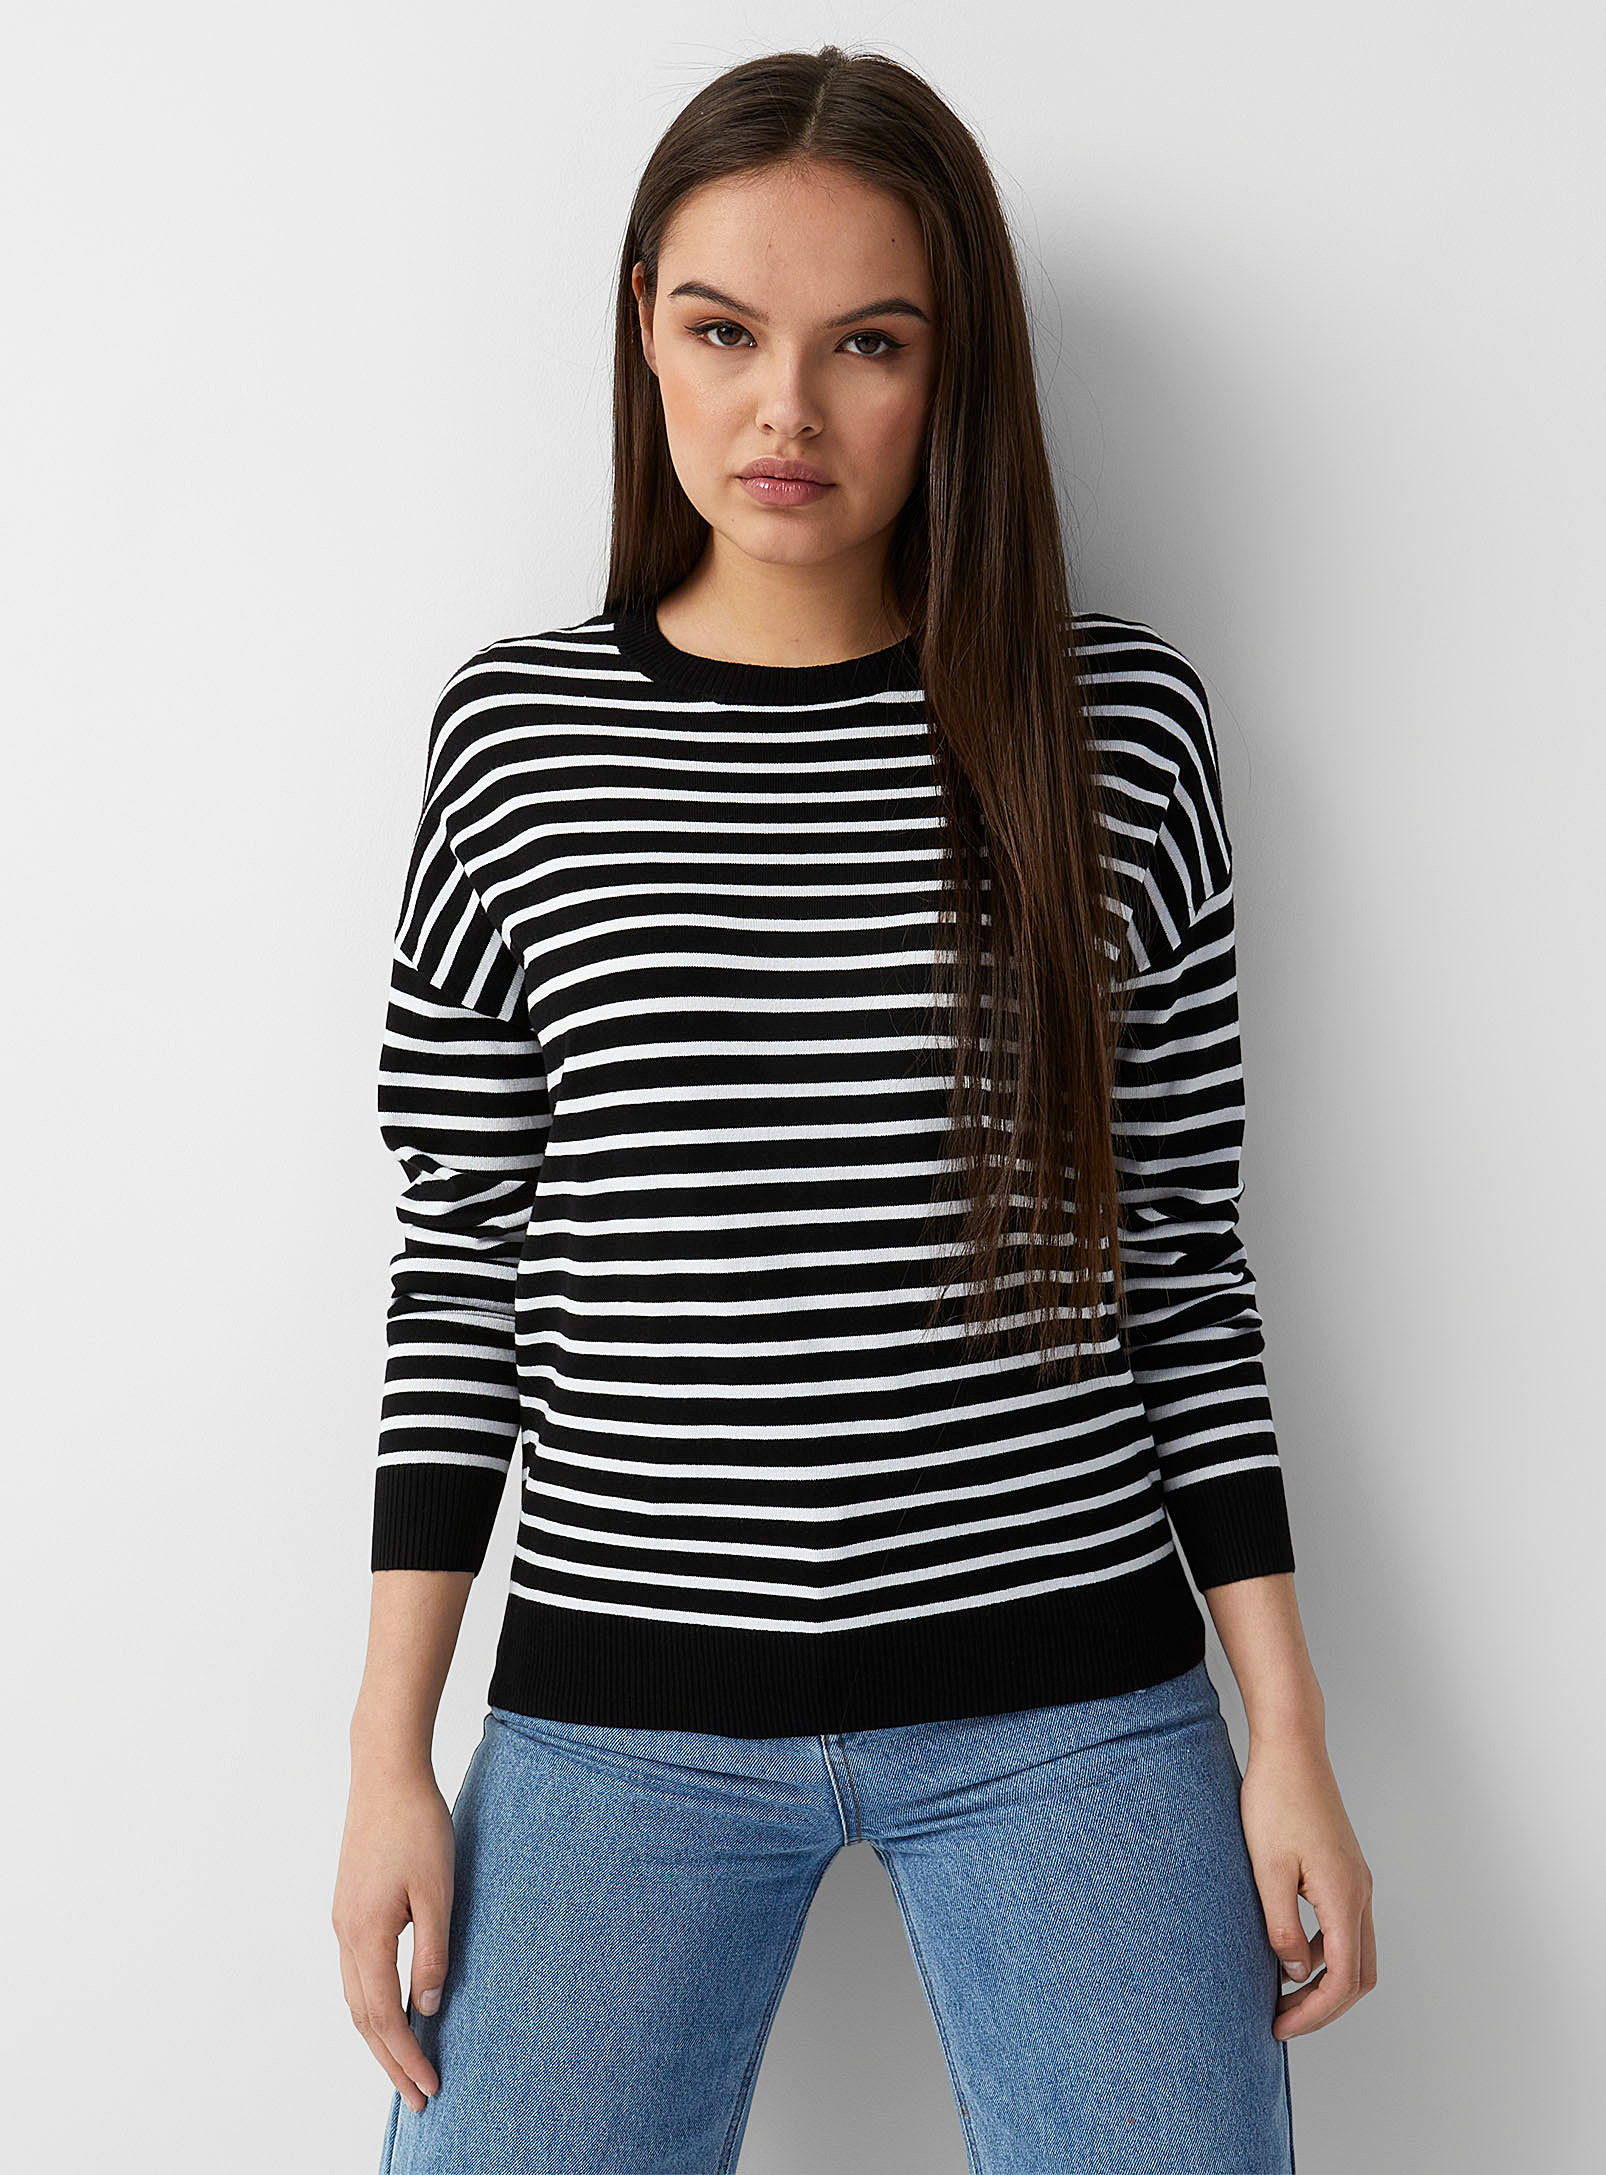 Twik - Women's Oversized striped silky knit sweater